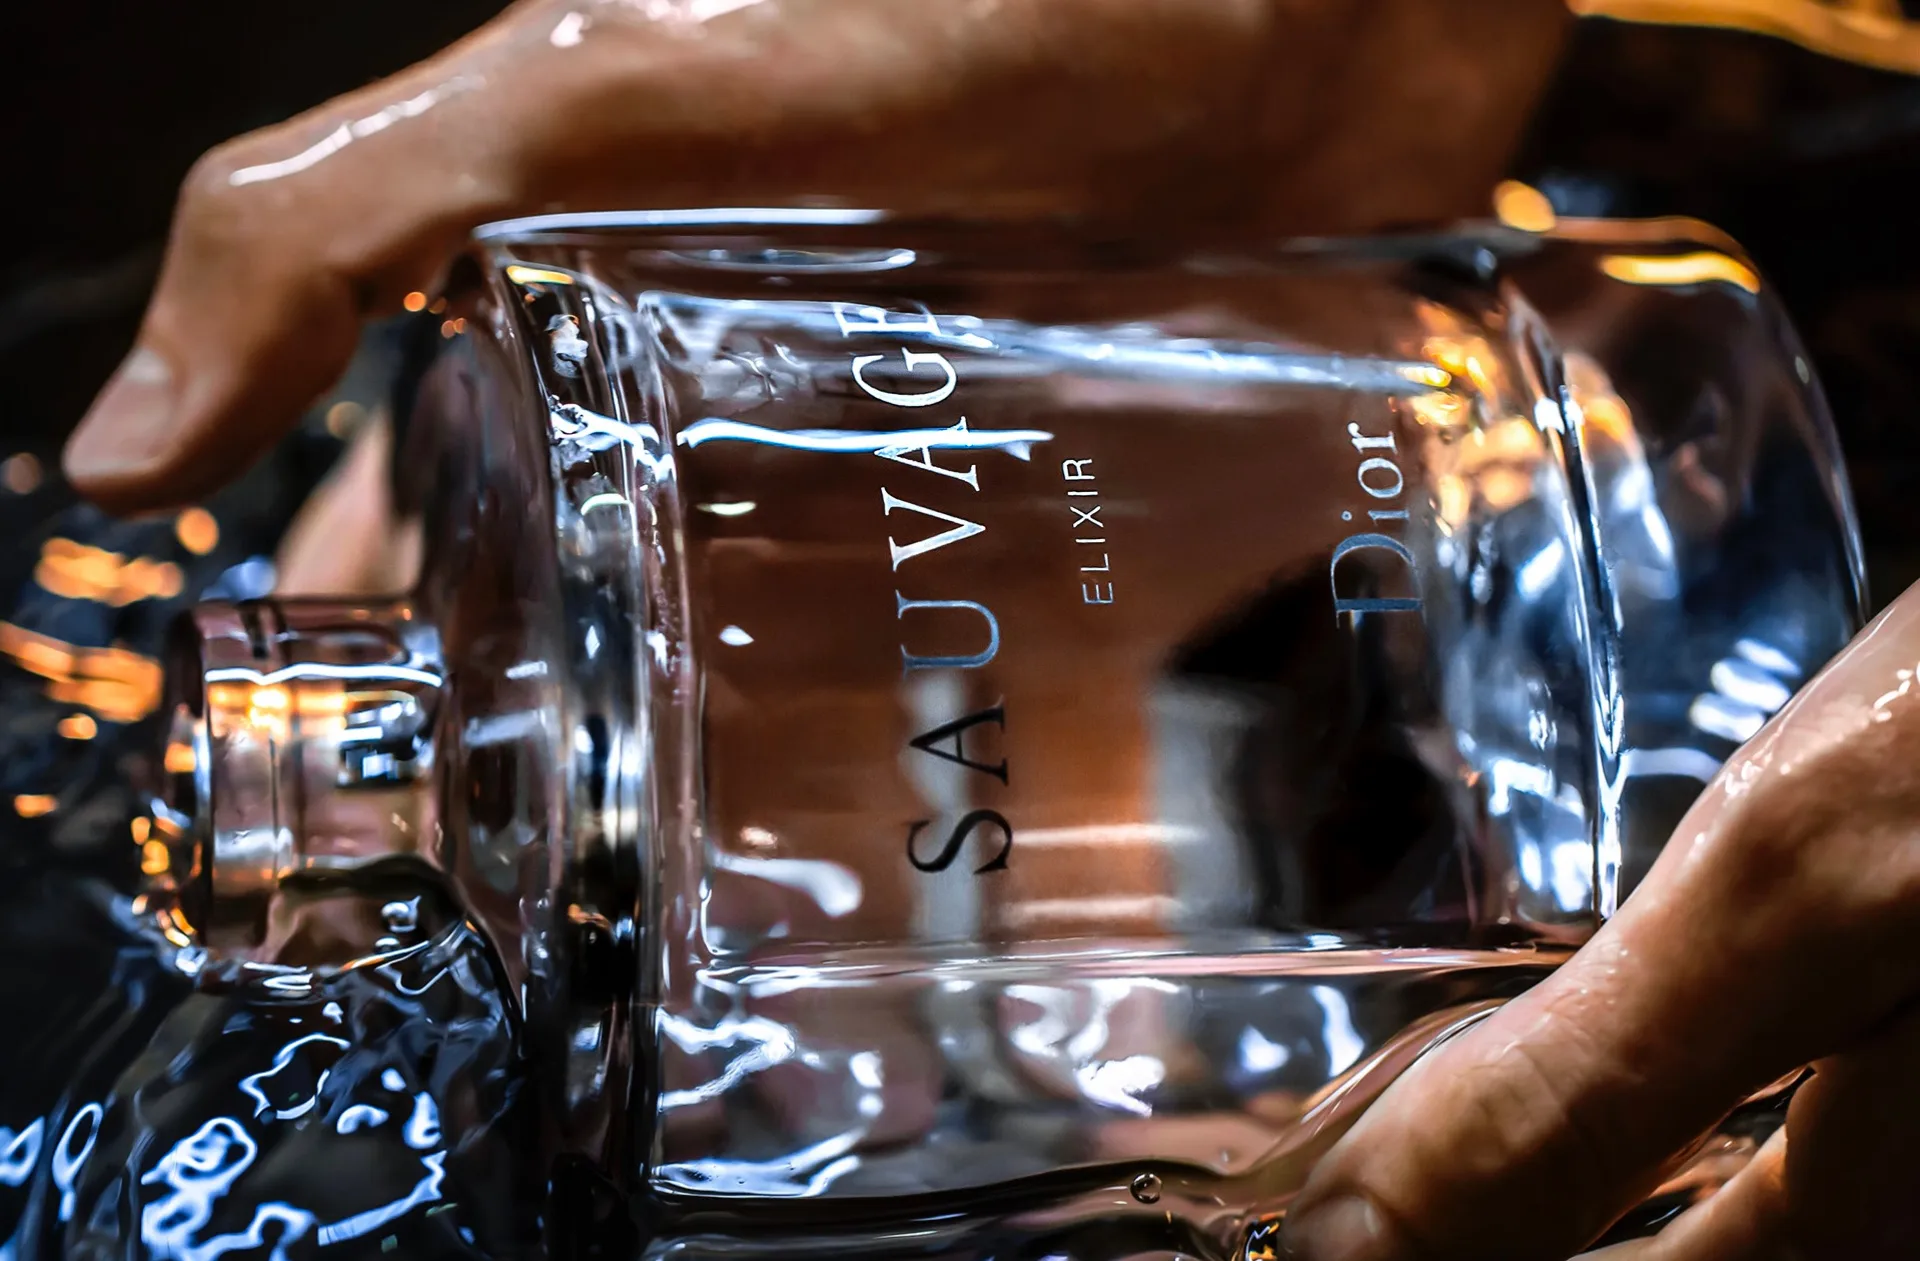 Dior x Baccarat: así es el perfume de lujo Sauvage edición limitada